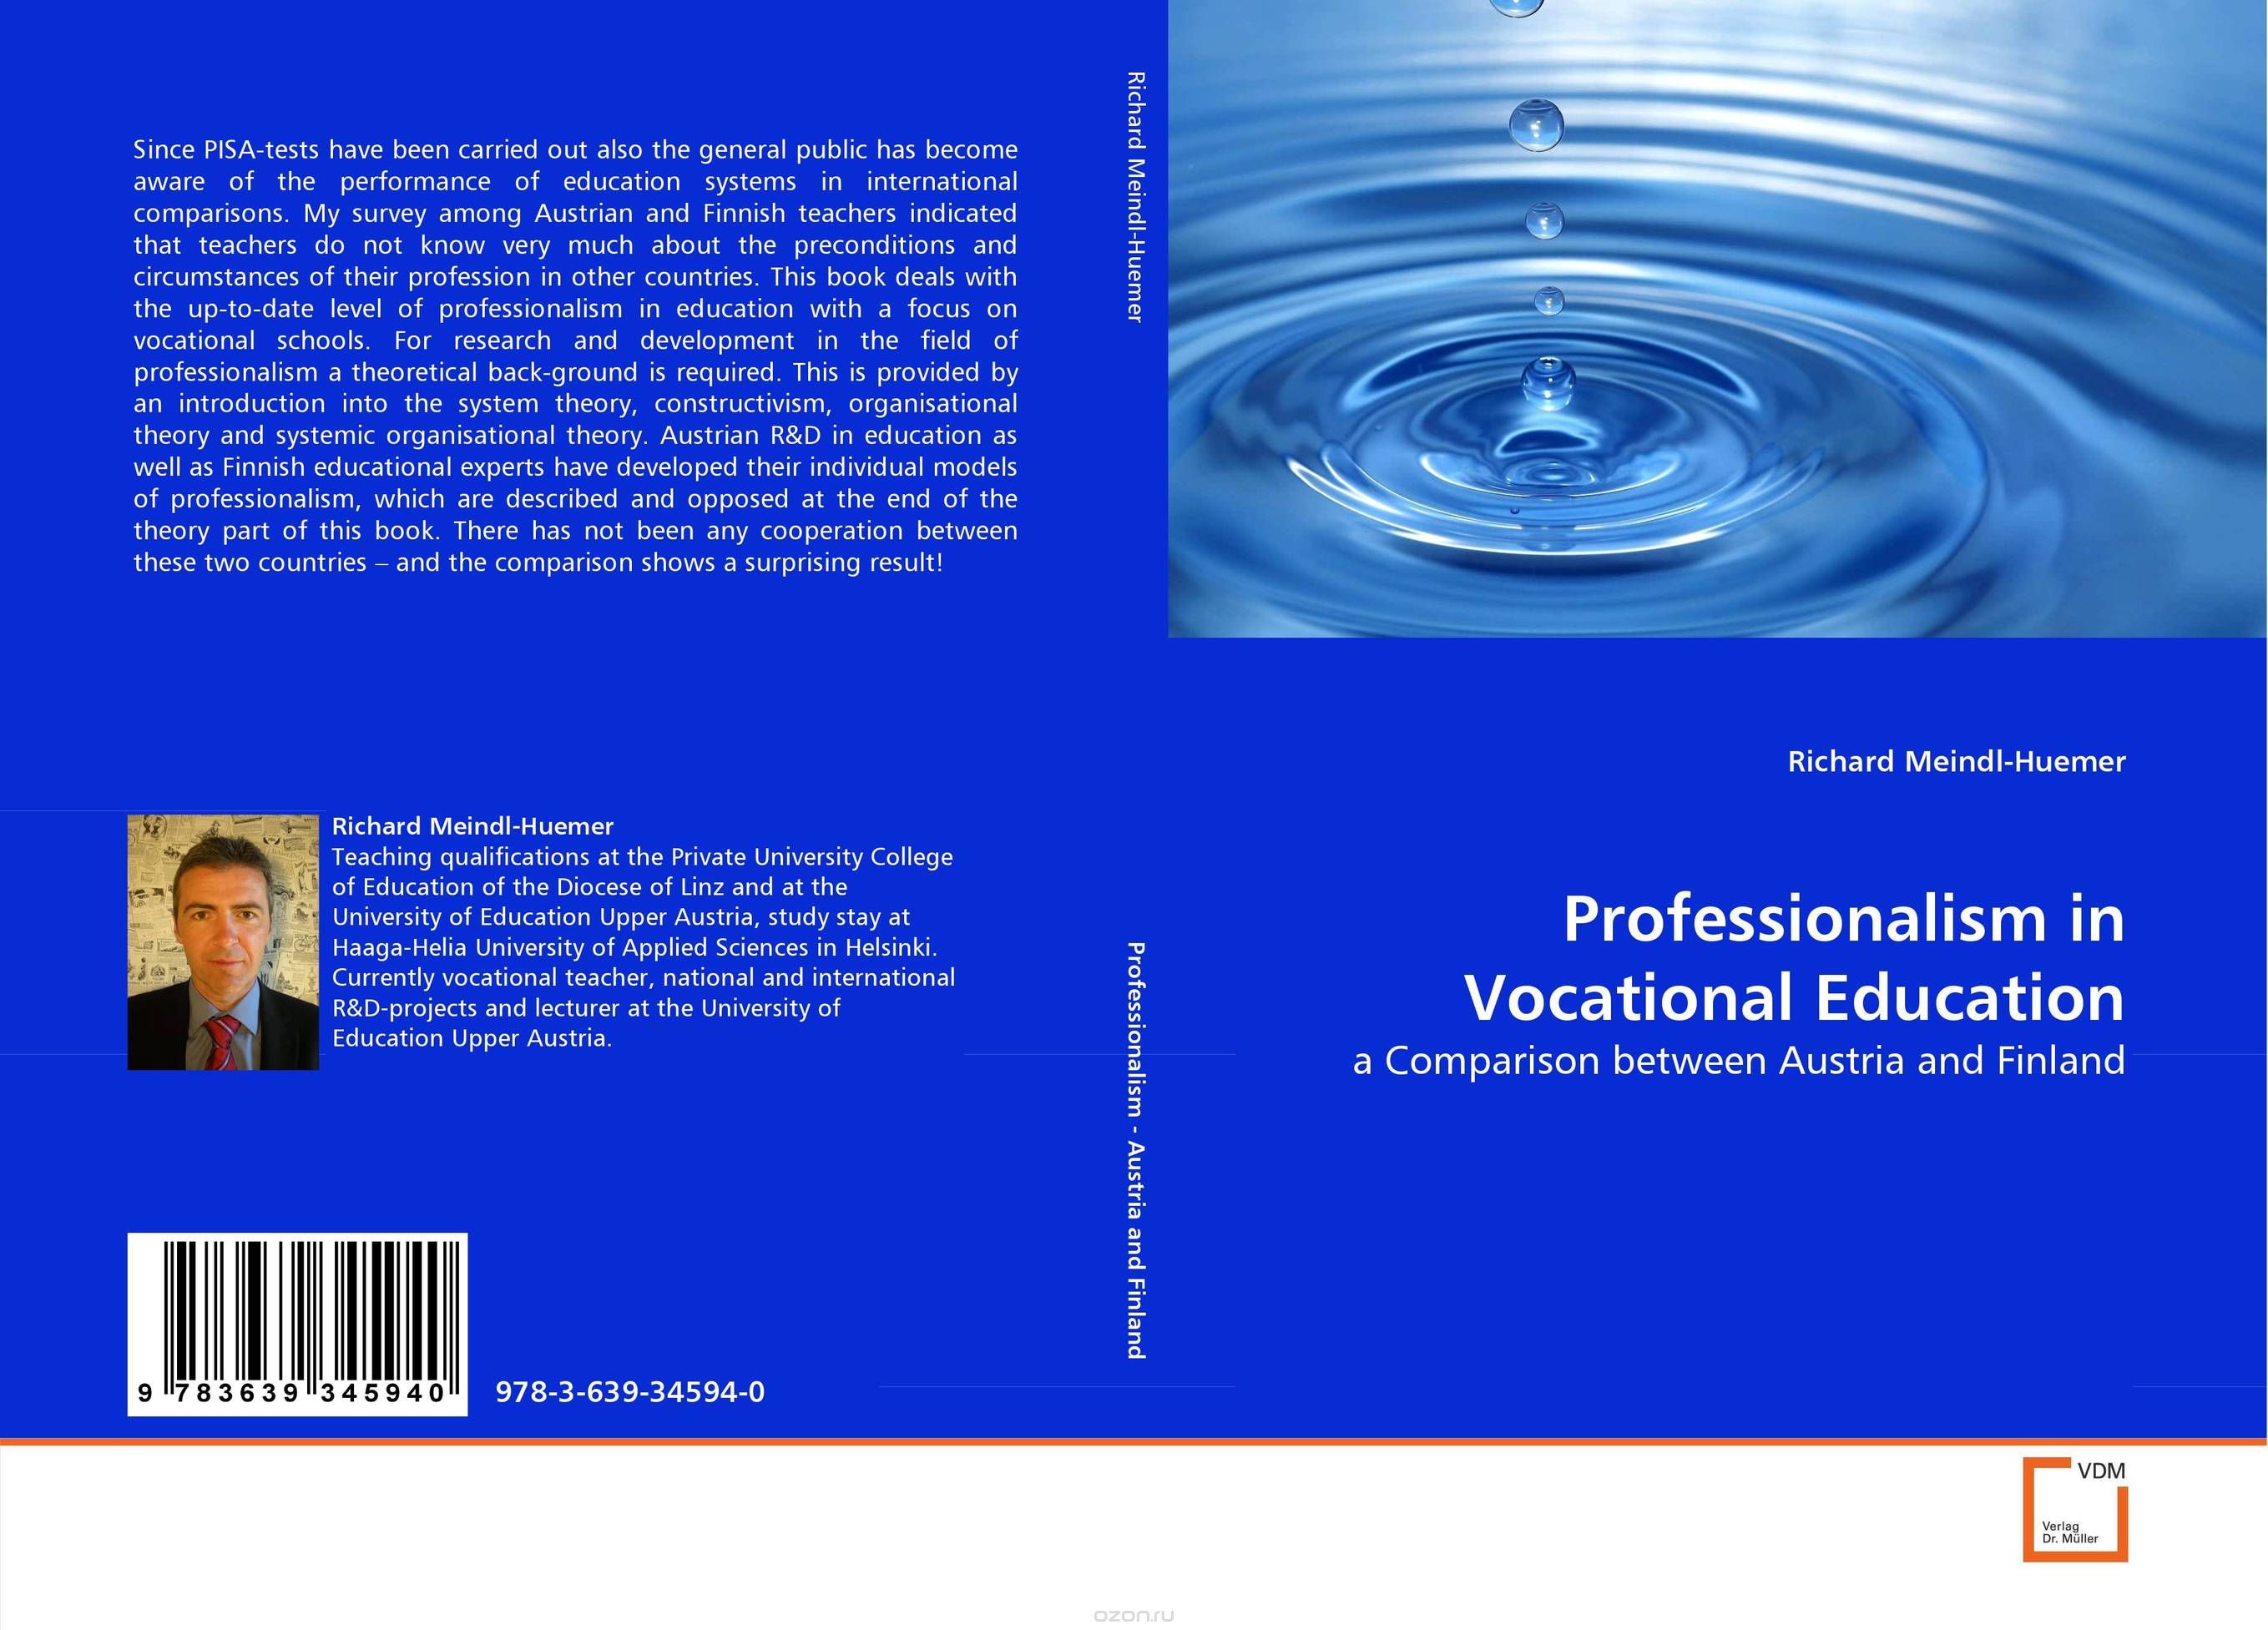 Скачать книгу "Professionalism in Vocational Education"